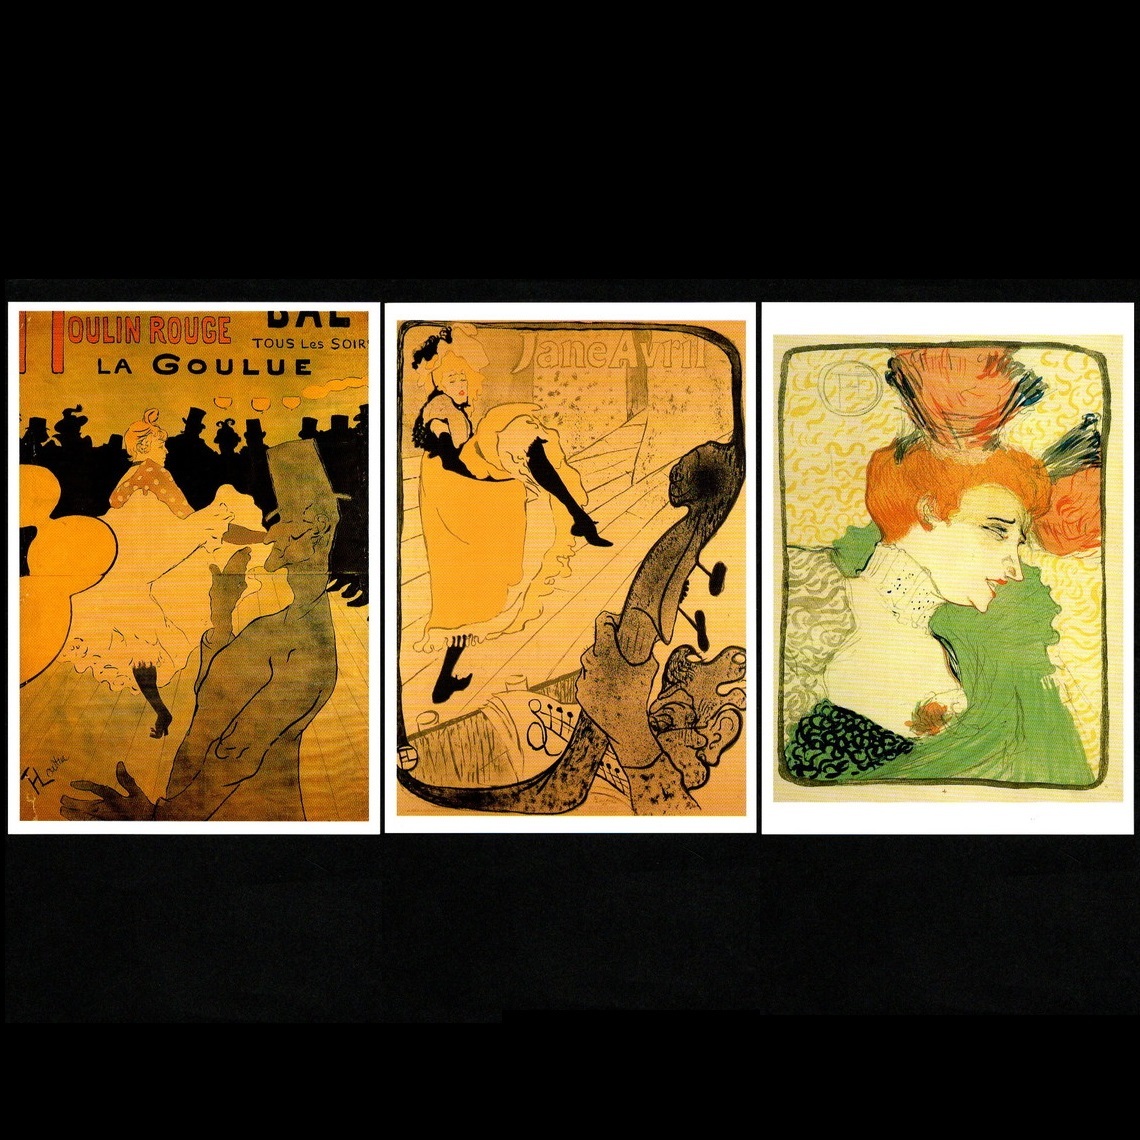 معرض فني للبطاقات البريدية المصورة معرض تولوز لوتريك: 100 عام بعد الموت تولوز لوتريك 2000 مجموعة من 3 بطاقات بريدية لرسومات مولان روج, المطبوعات, بطاقة بريدية, بطاقة بريدية, آحرون